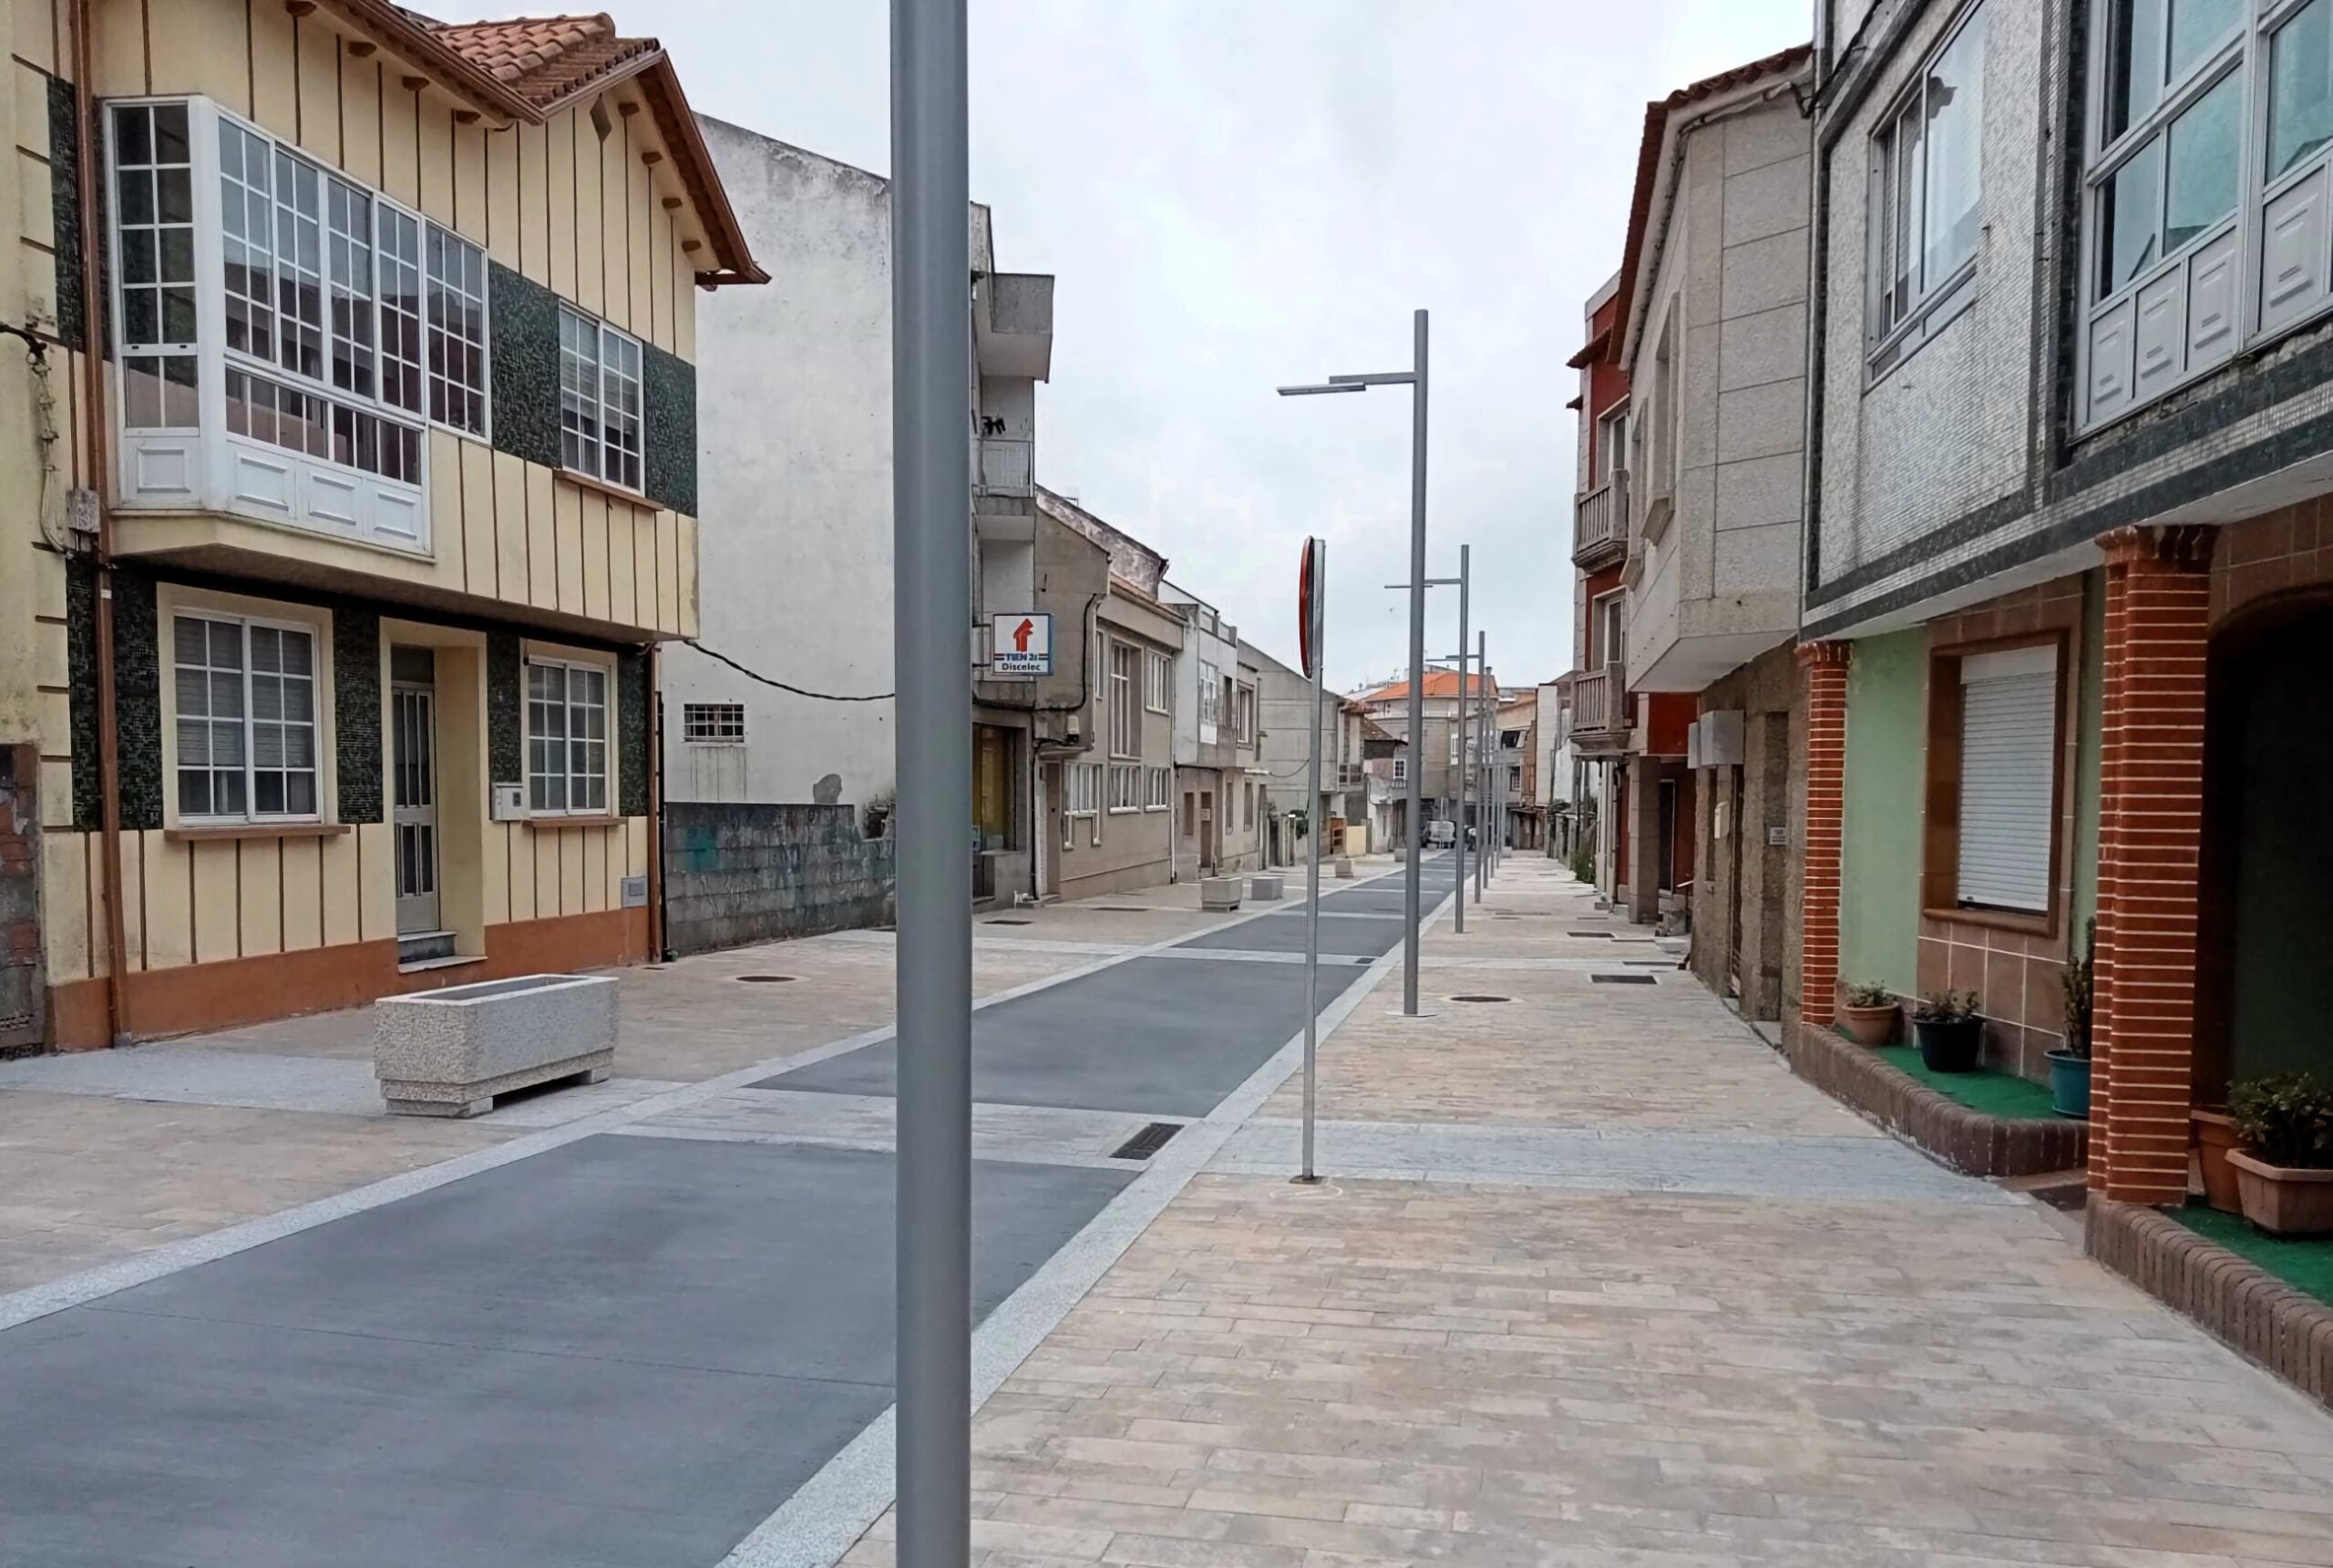 Avenida de Castelao en Illa de Arousa. Las aceras y la calzada forman plataforma continua delimitada por cambios en el pavimento. Con bancos, jardineras y farolas añadidos tras la remodelación.